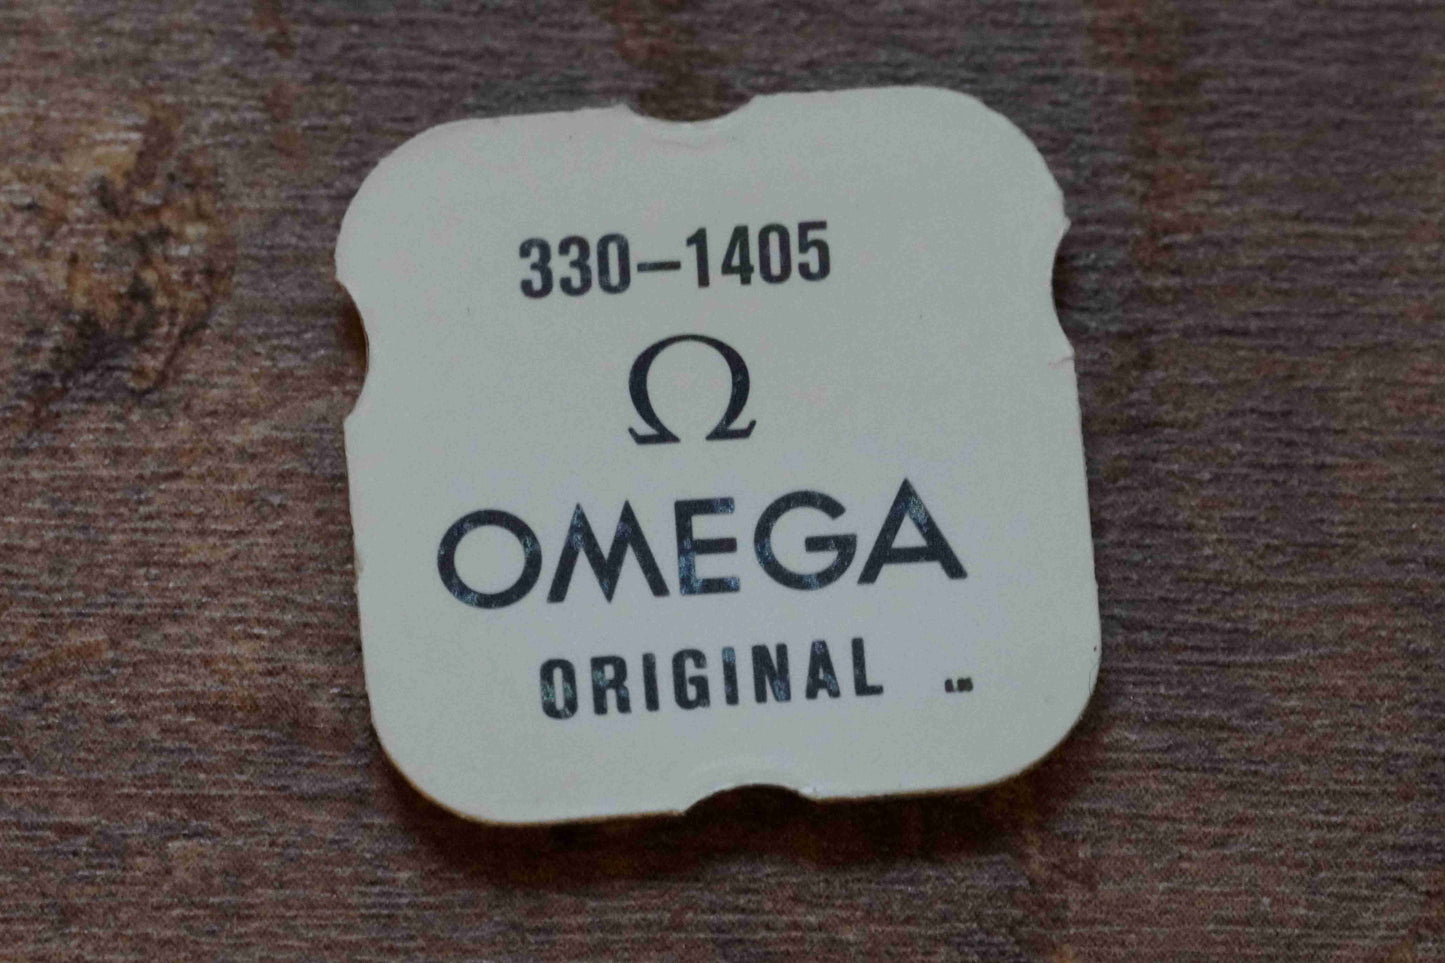 Omega cal 330 part 1405 Core for pawl bearing yoke